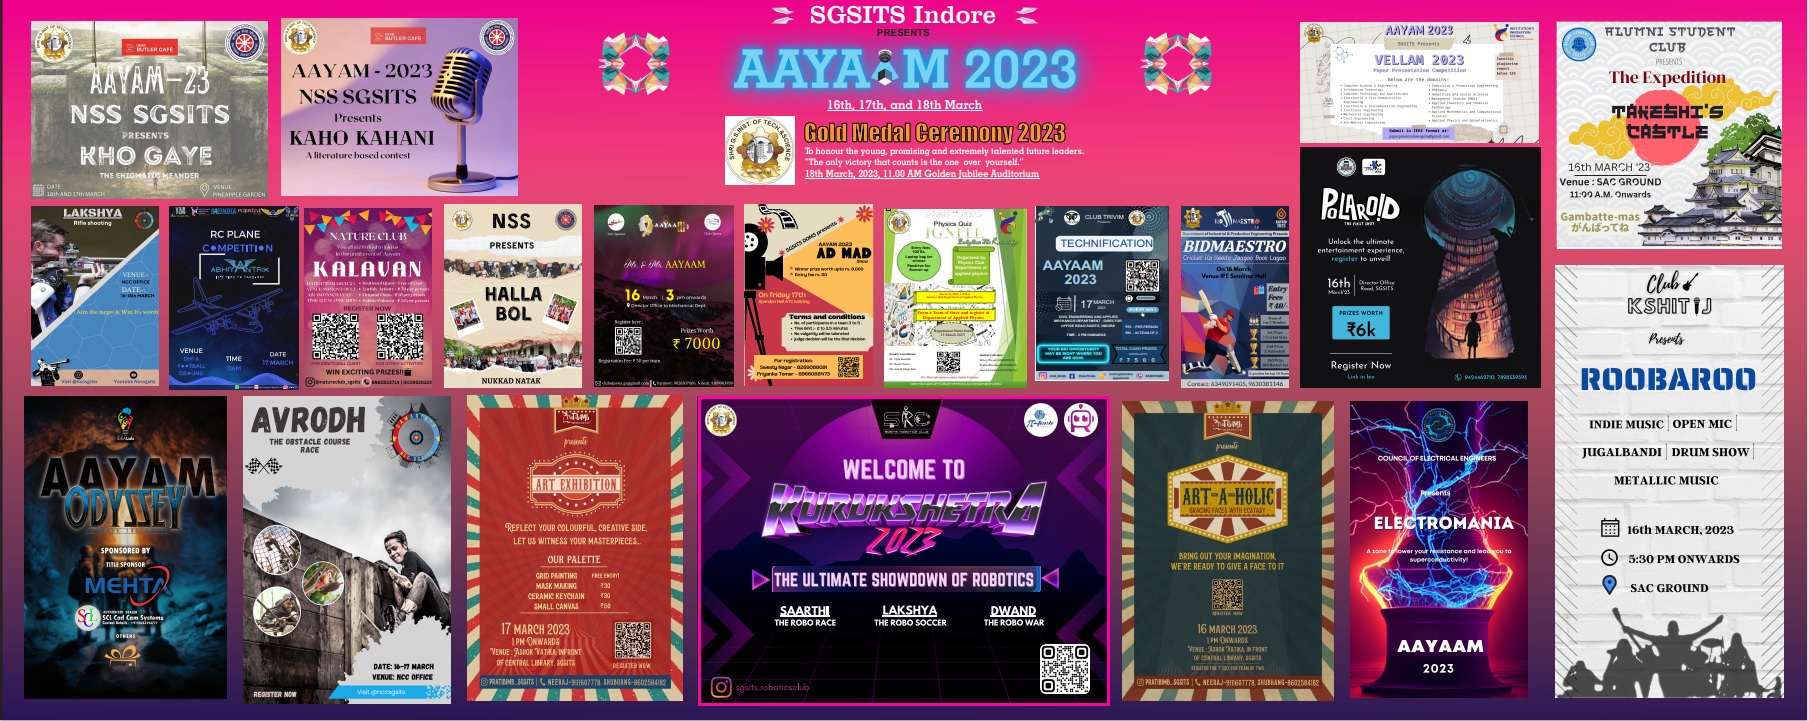 AAYAAM 2023 Poster